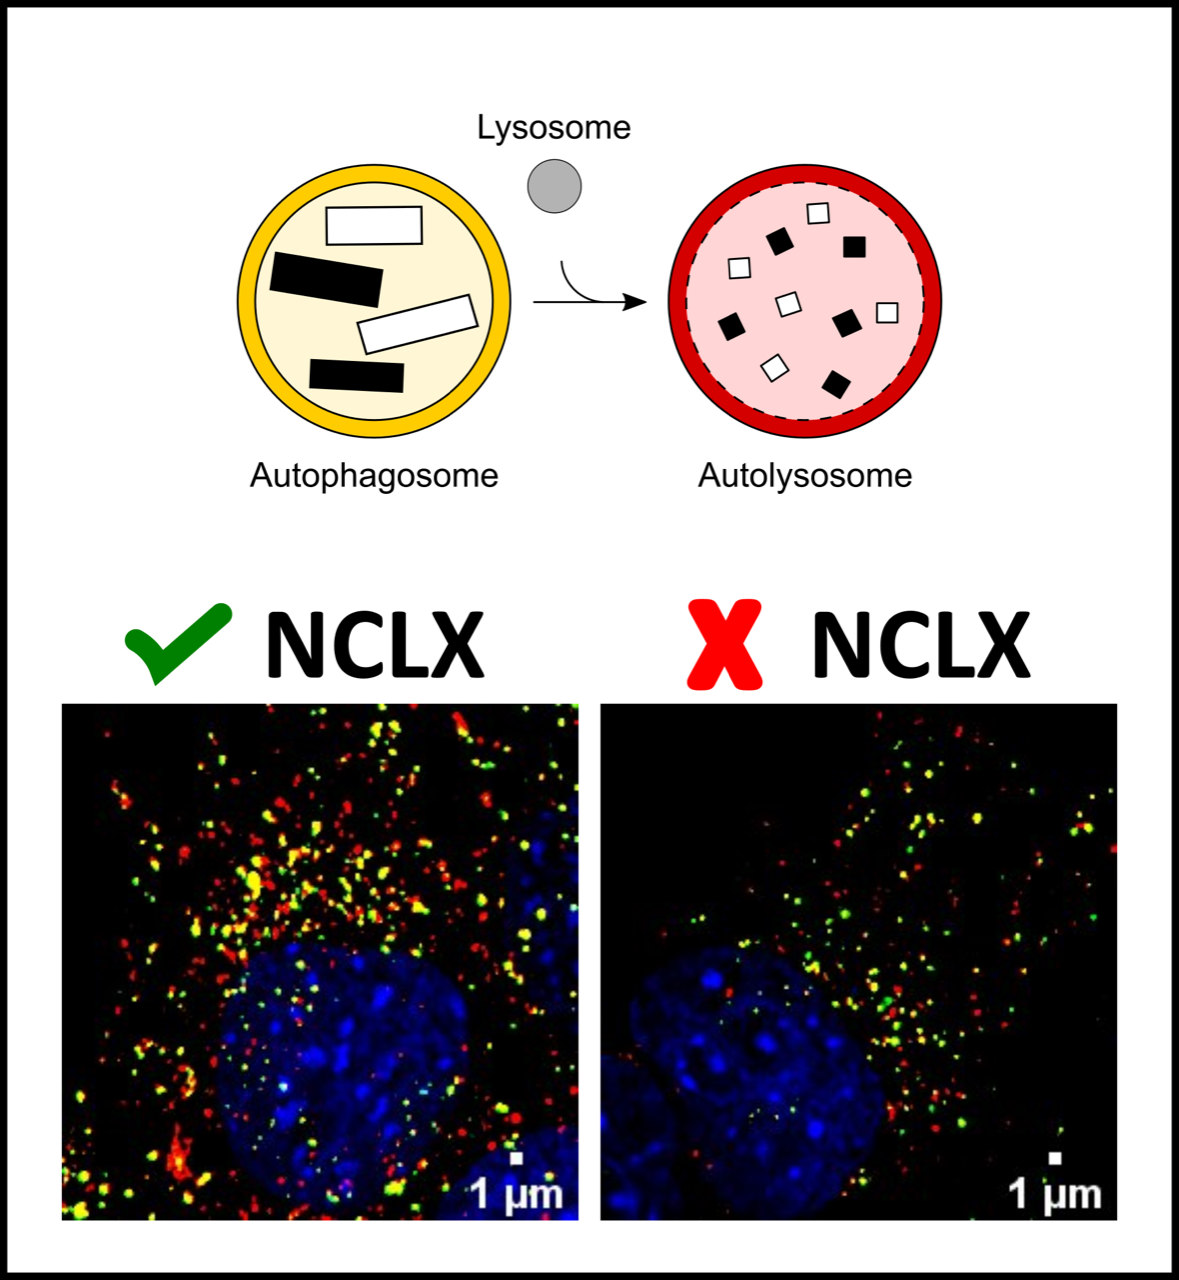 Inibição do transportador de cálcio mitocondrial, NCLX, compromete autofagia em células